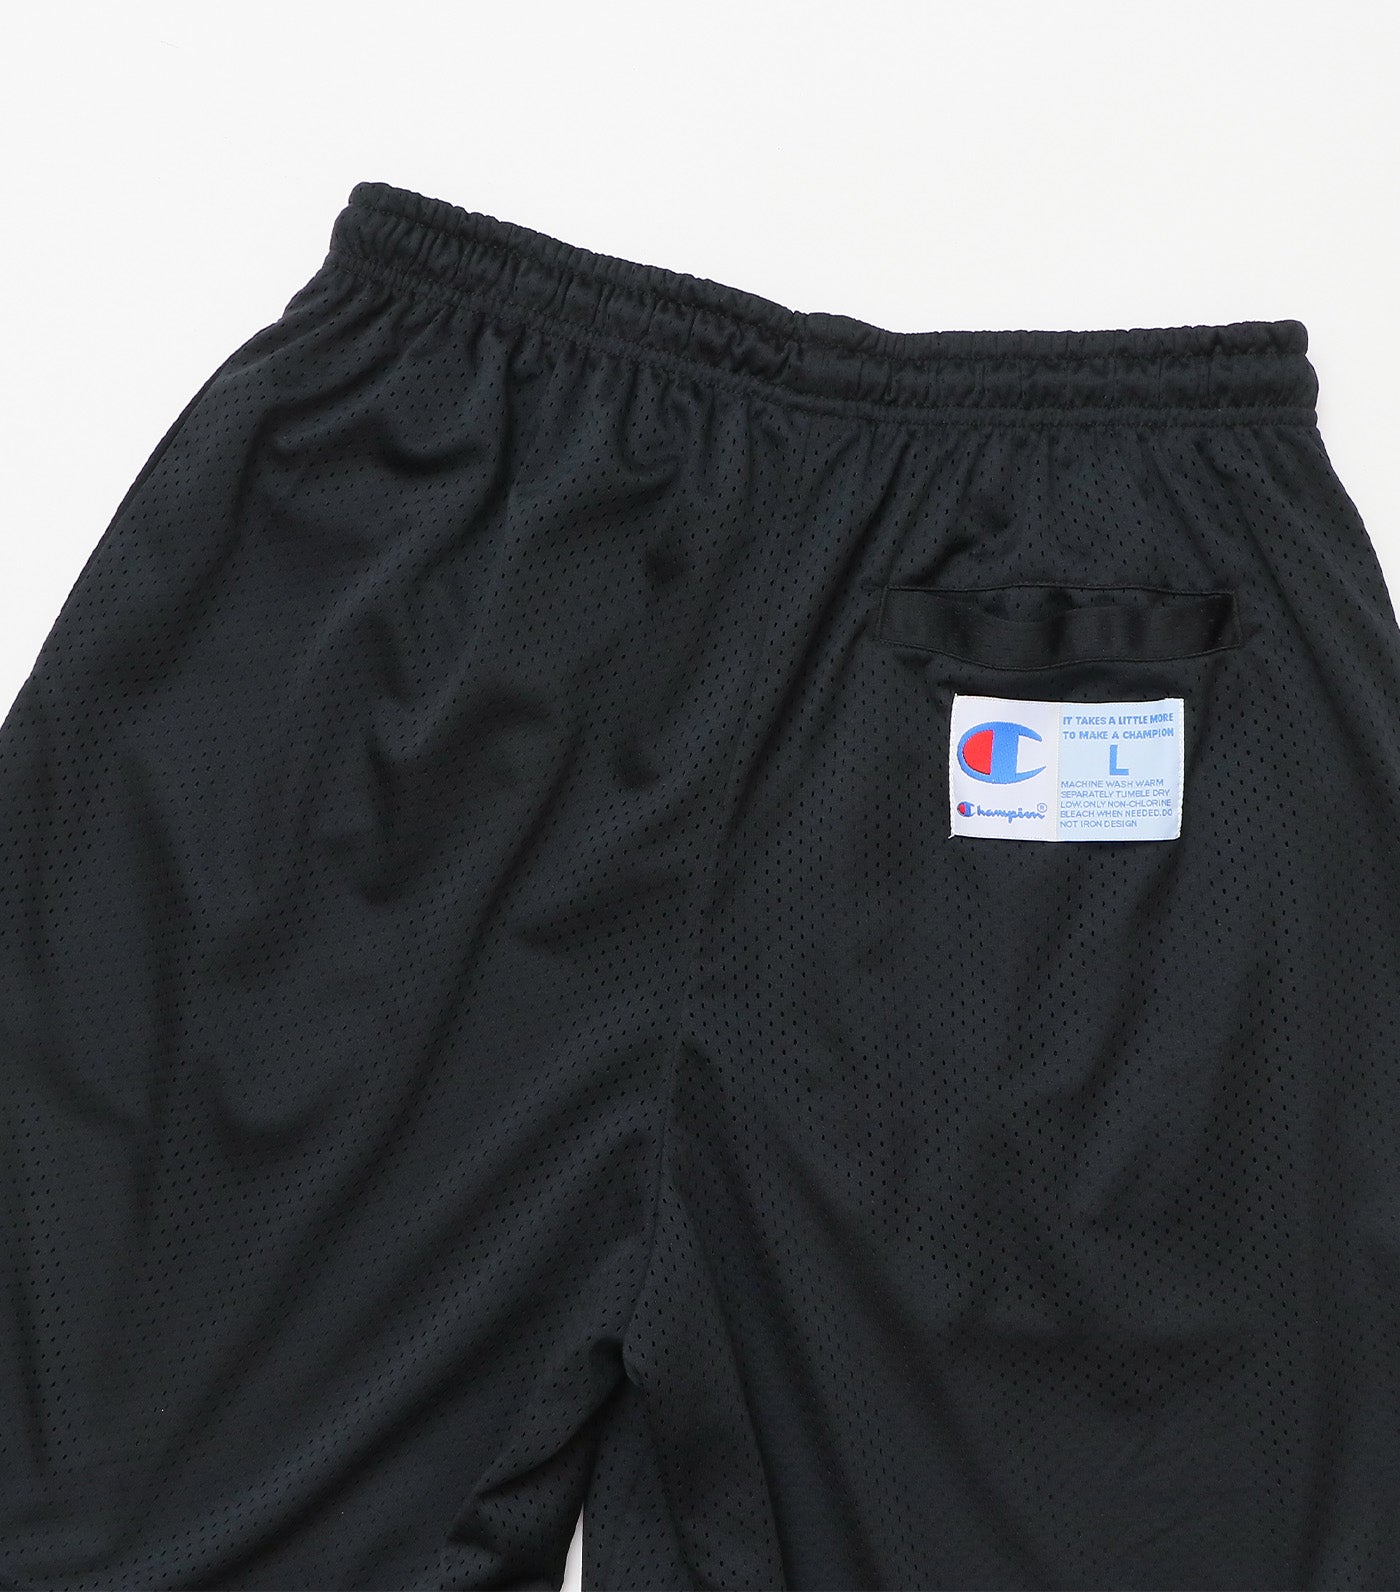 Japan Line Mesh Shorts Black